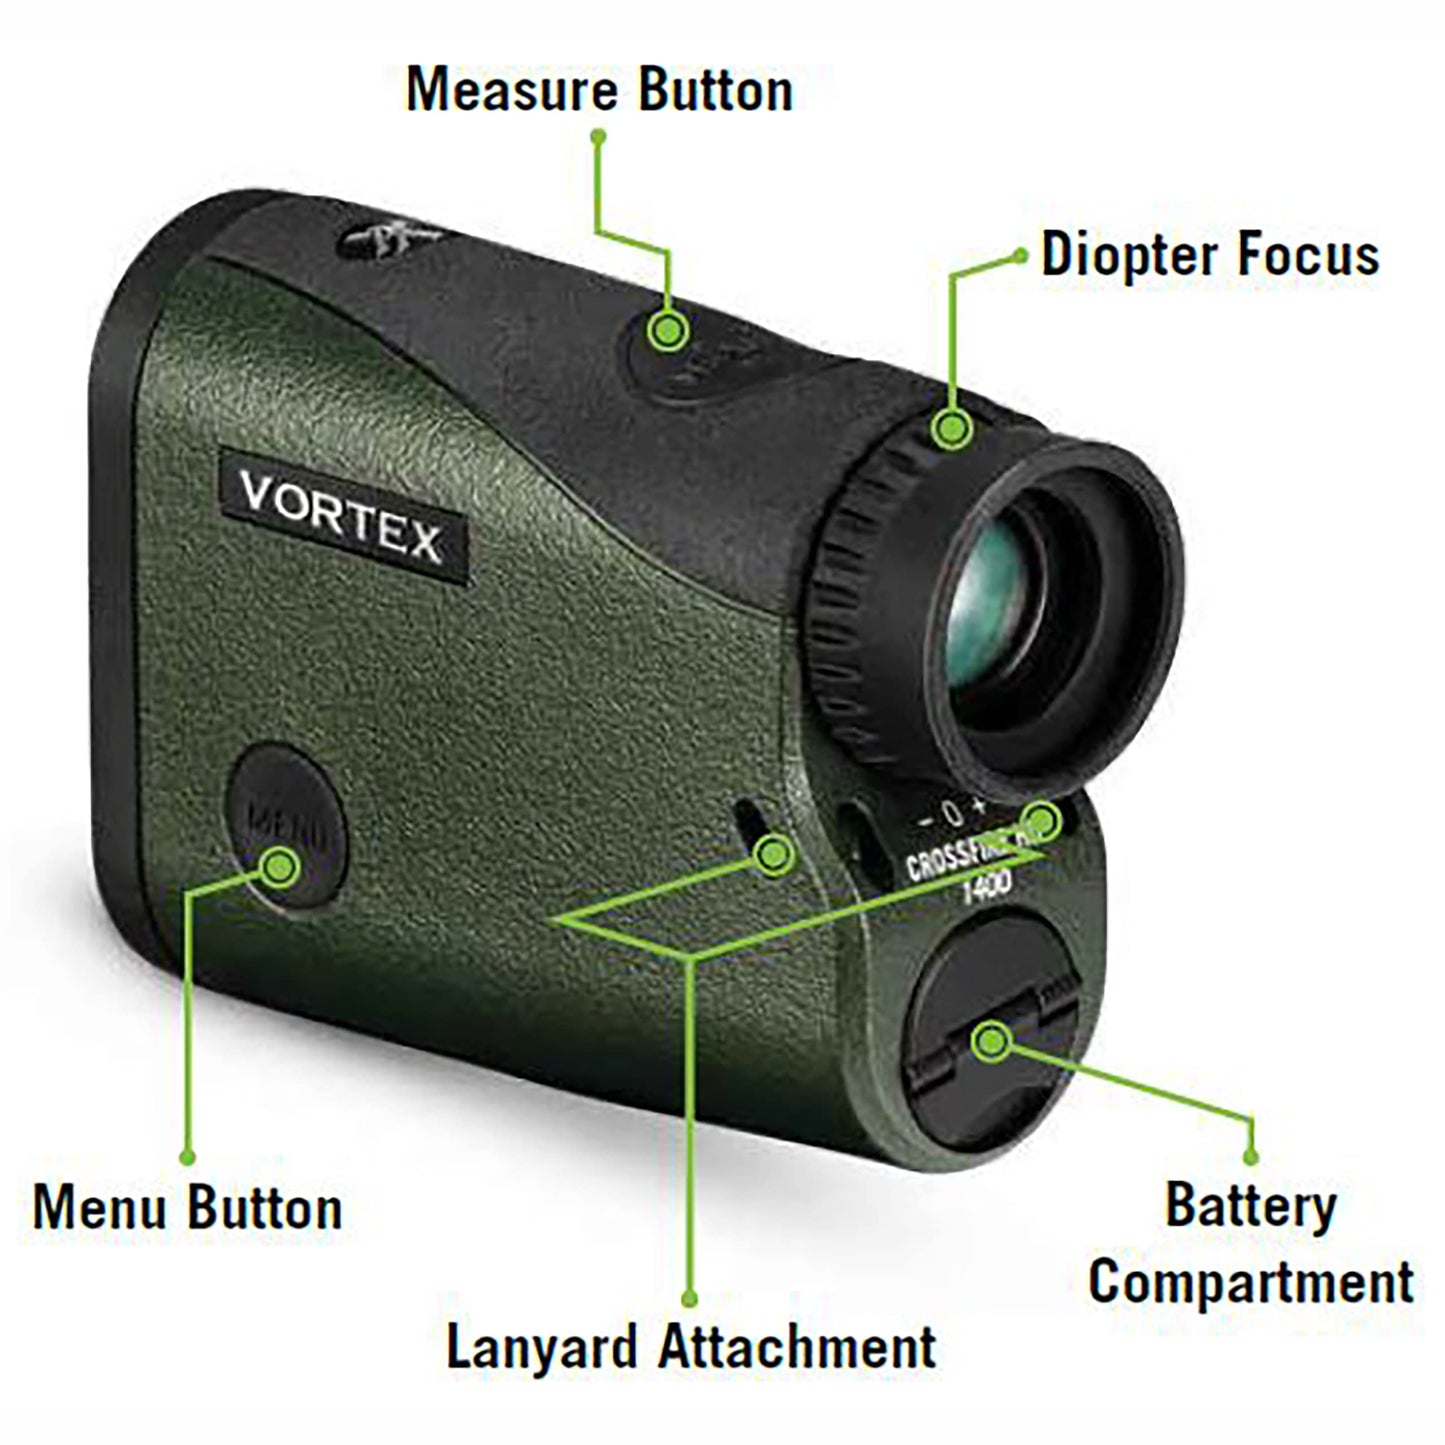 Vortex Optics Crossfire HD 1400 Laser Rangefinder - LRF-CF1400